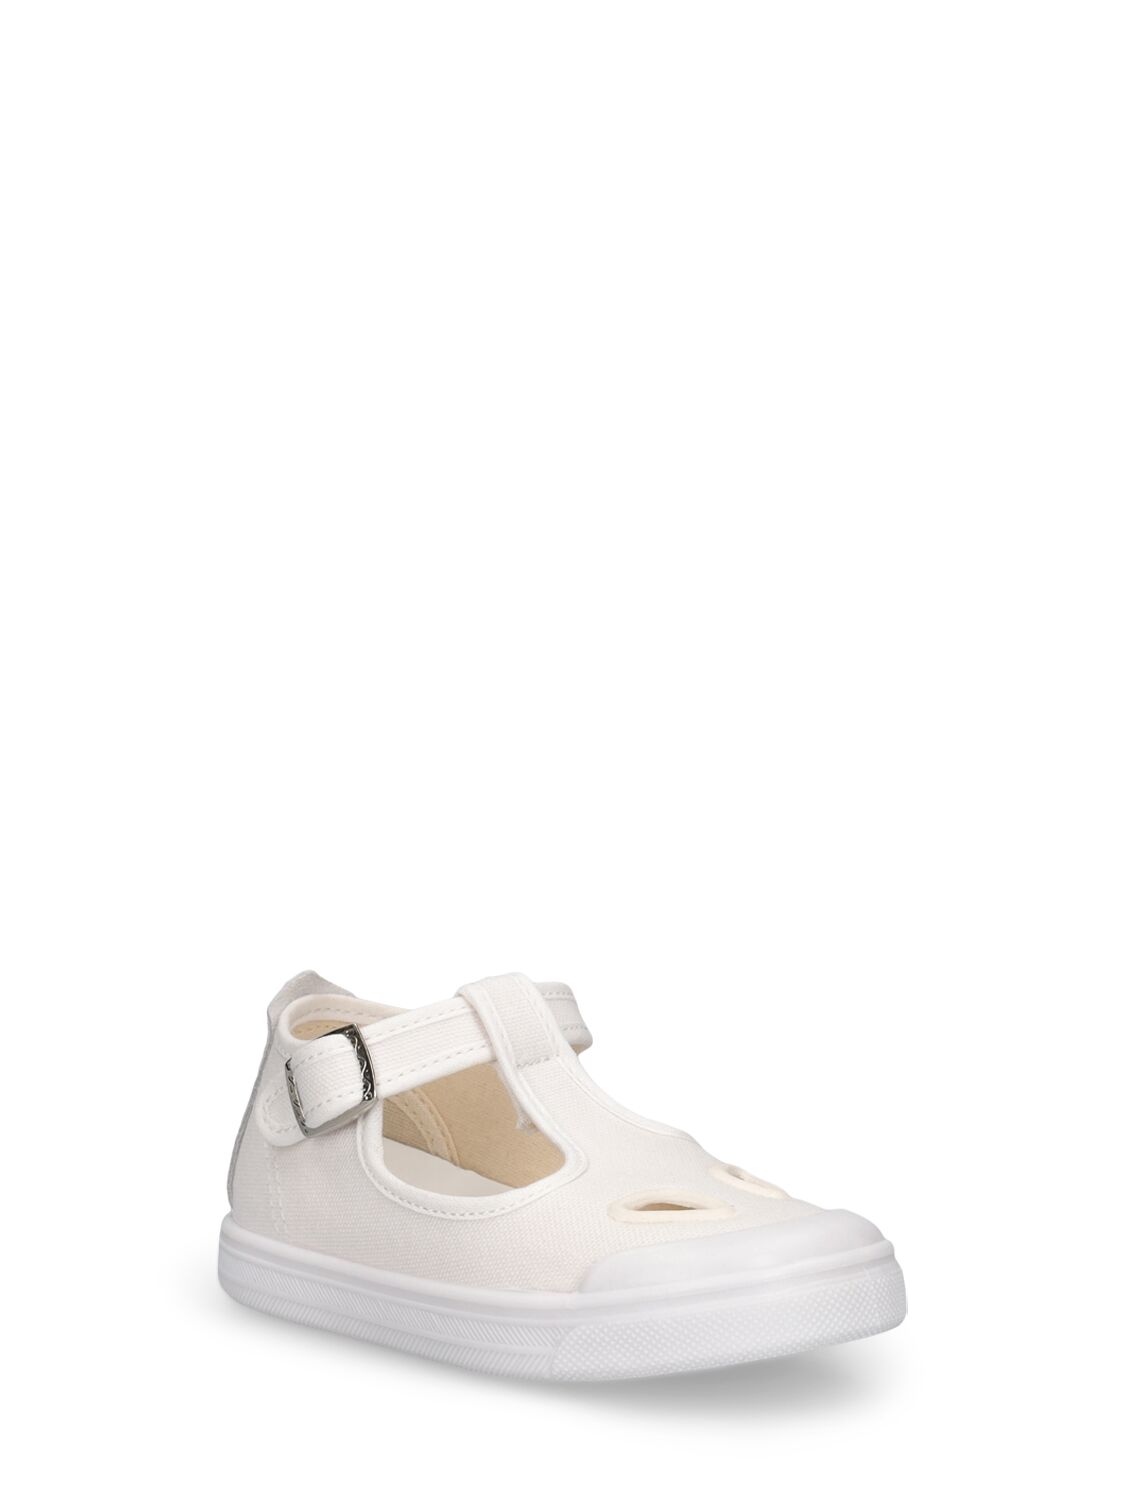 Shop Il Gufo Cotton Canvas Sandals In White